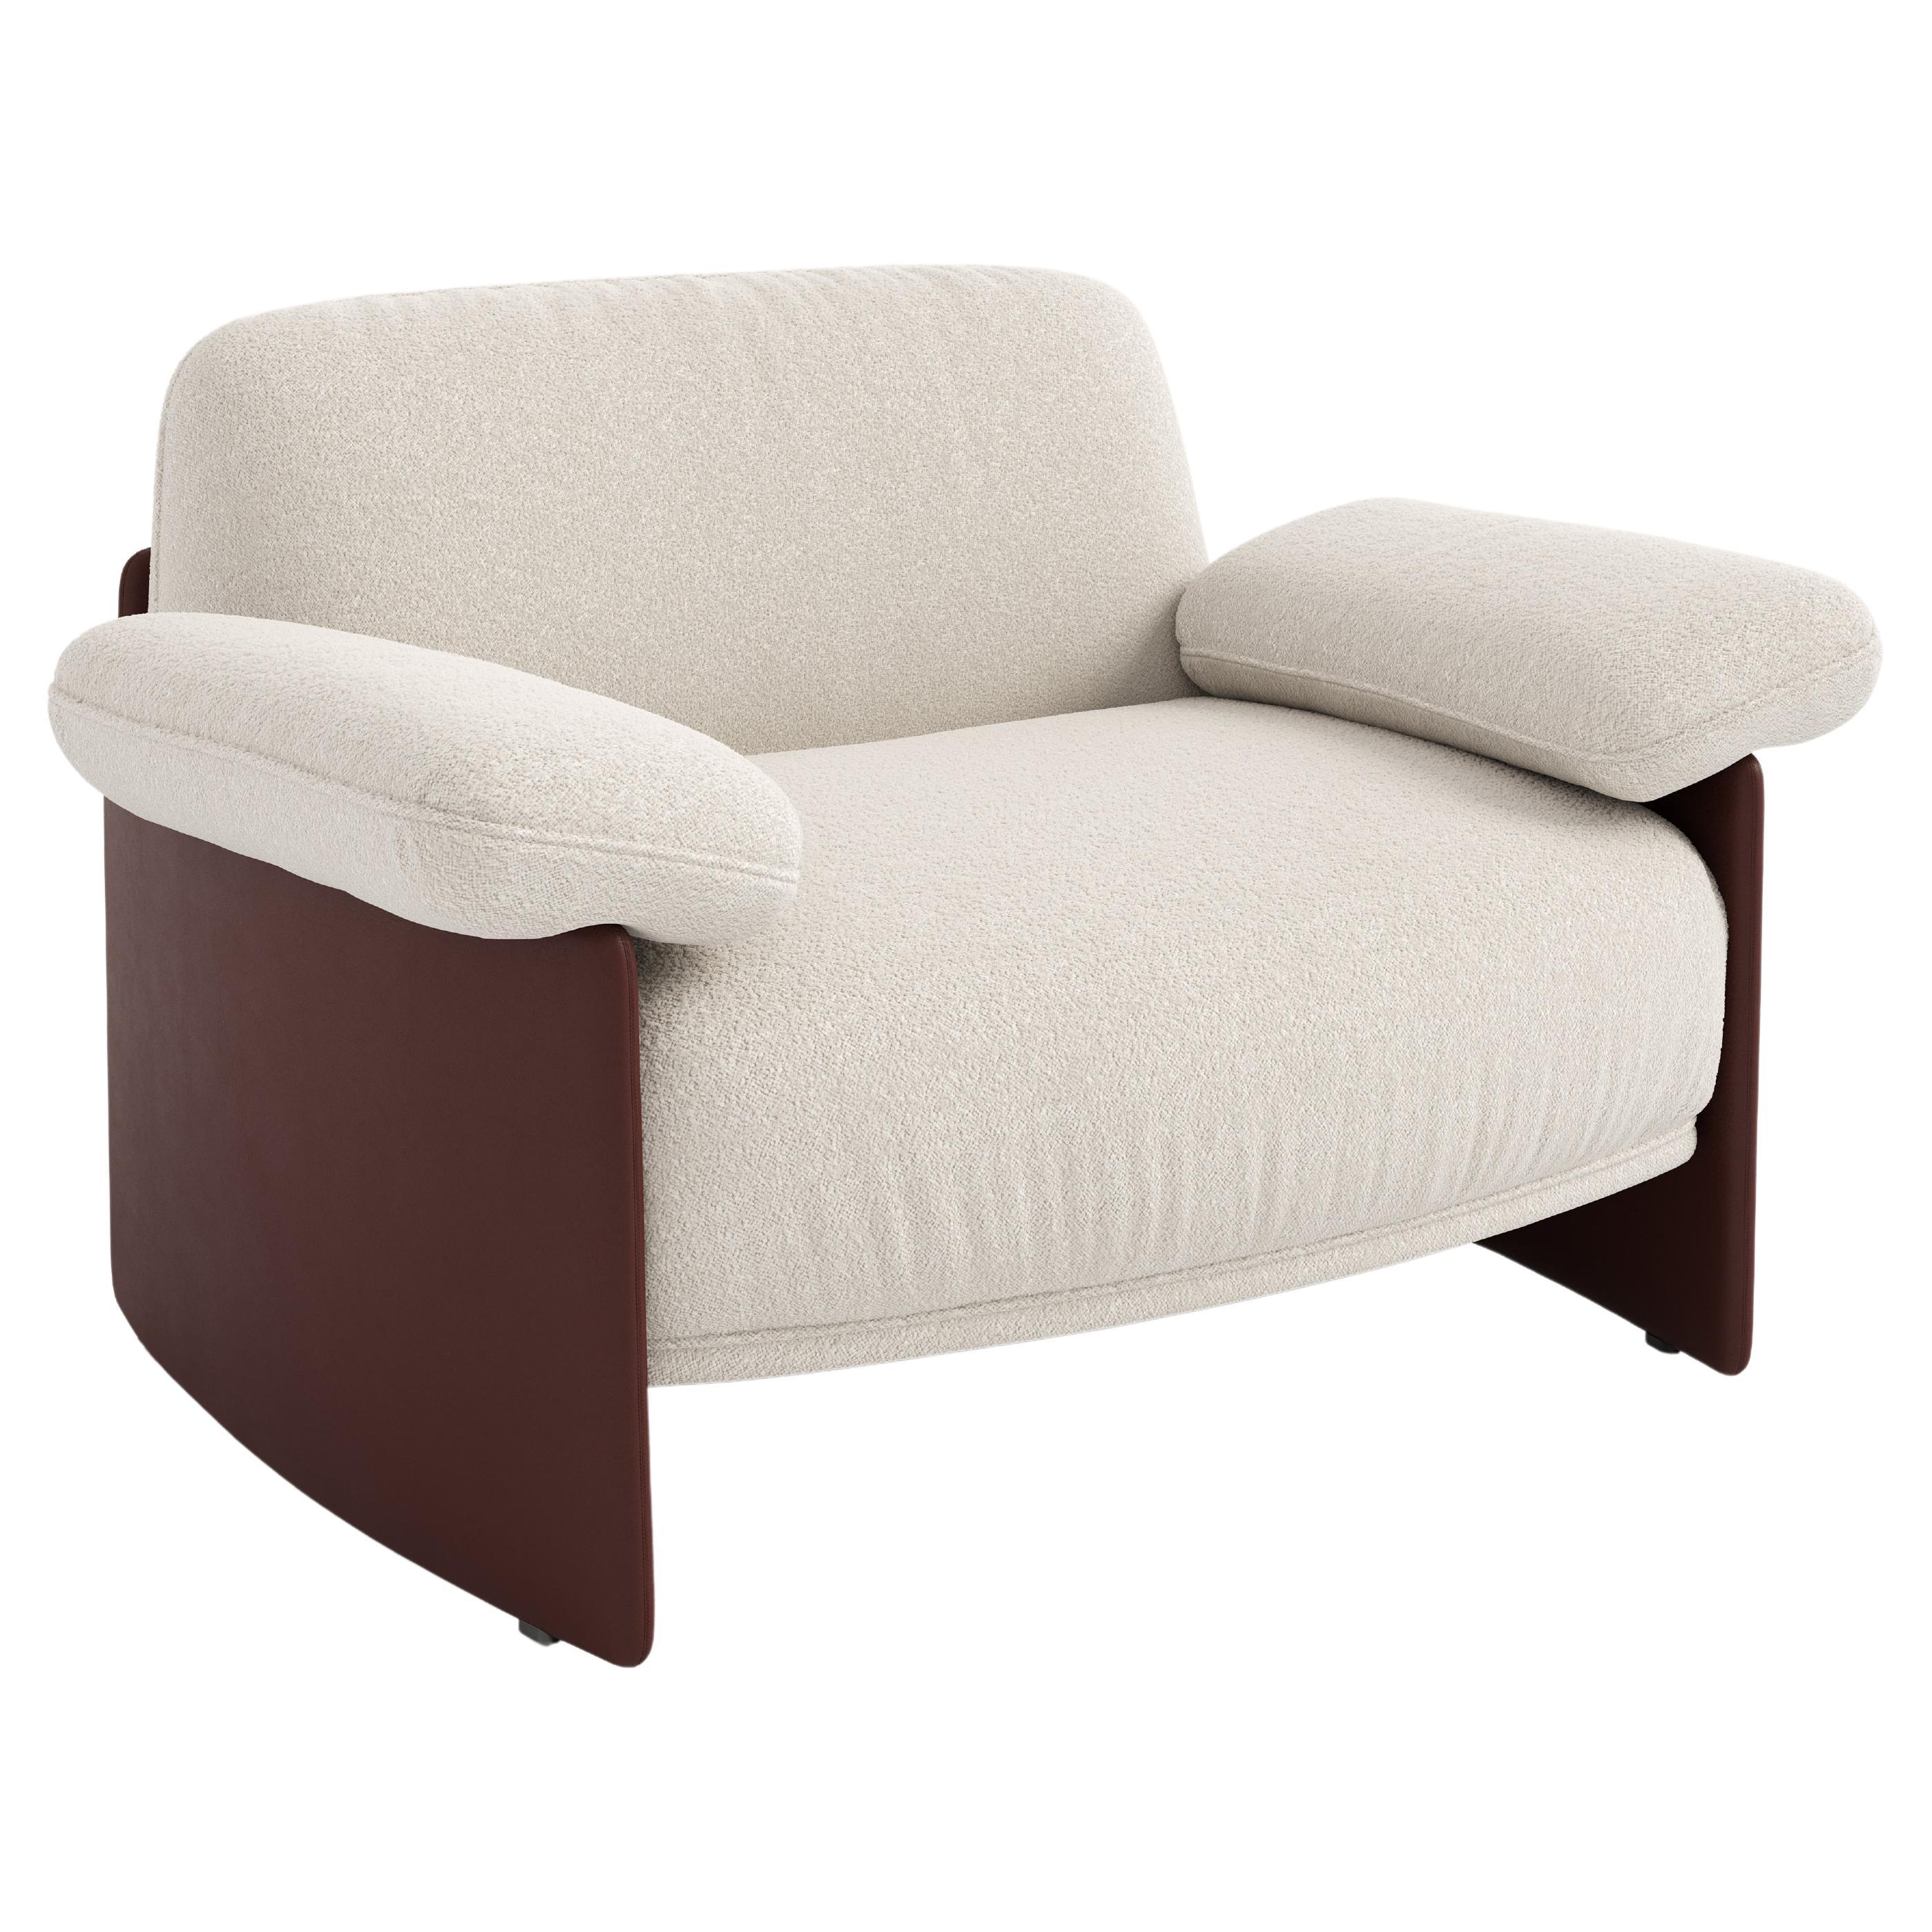 Customizable Wittmann Marlow Lounge Chair Designed by Sebastian Herkner